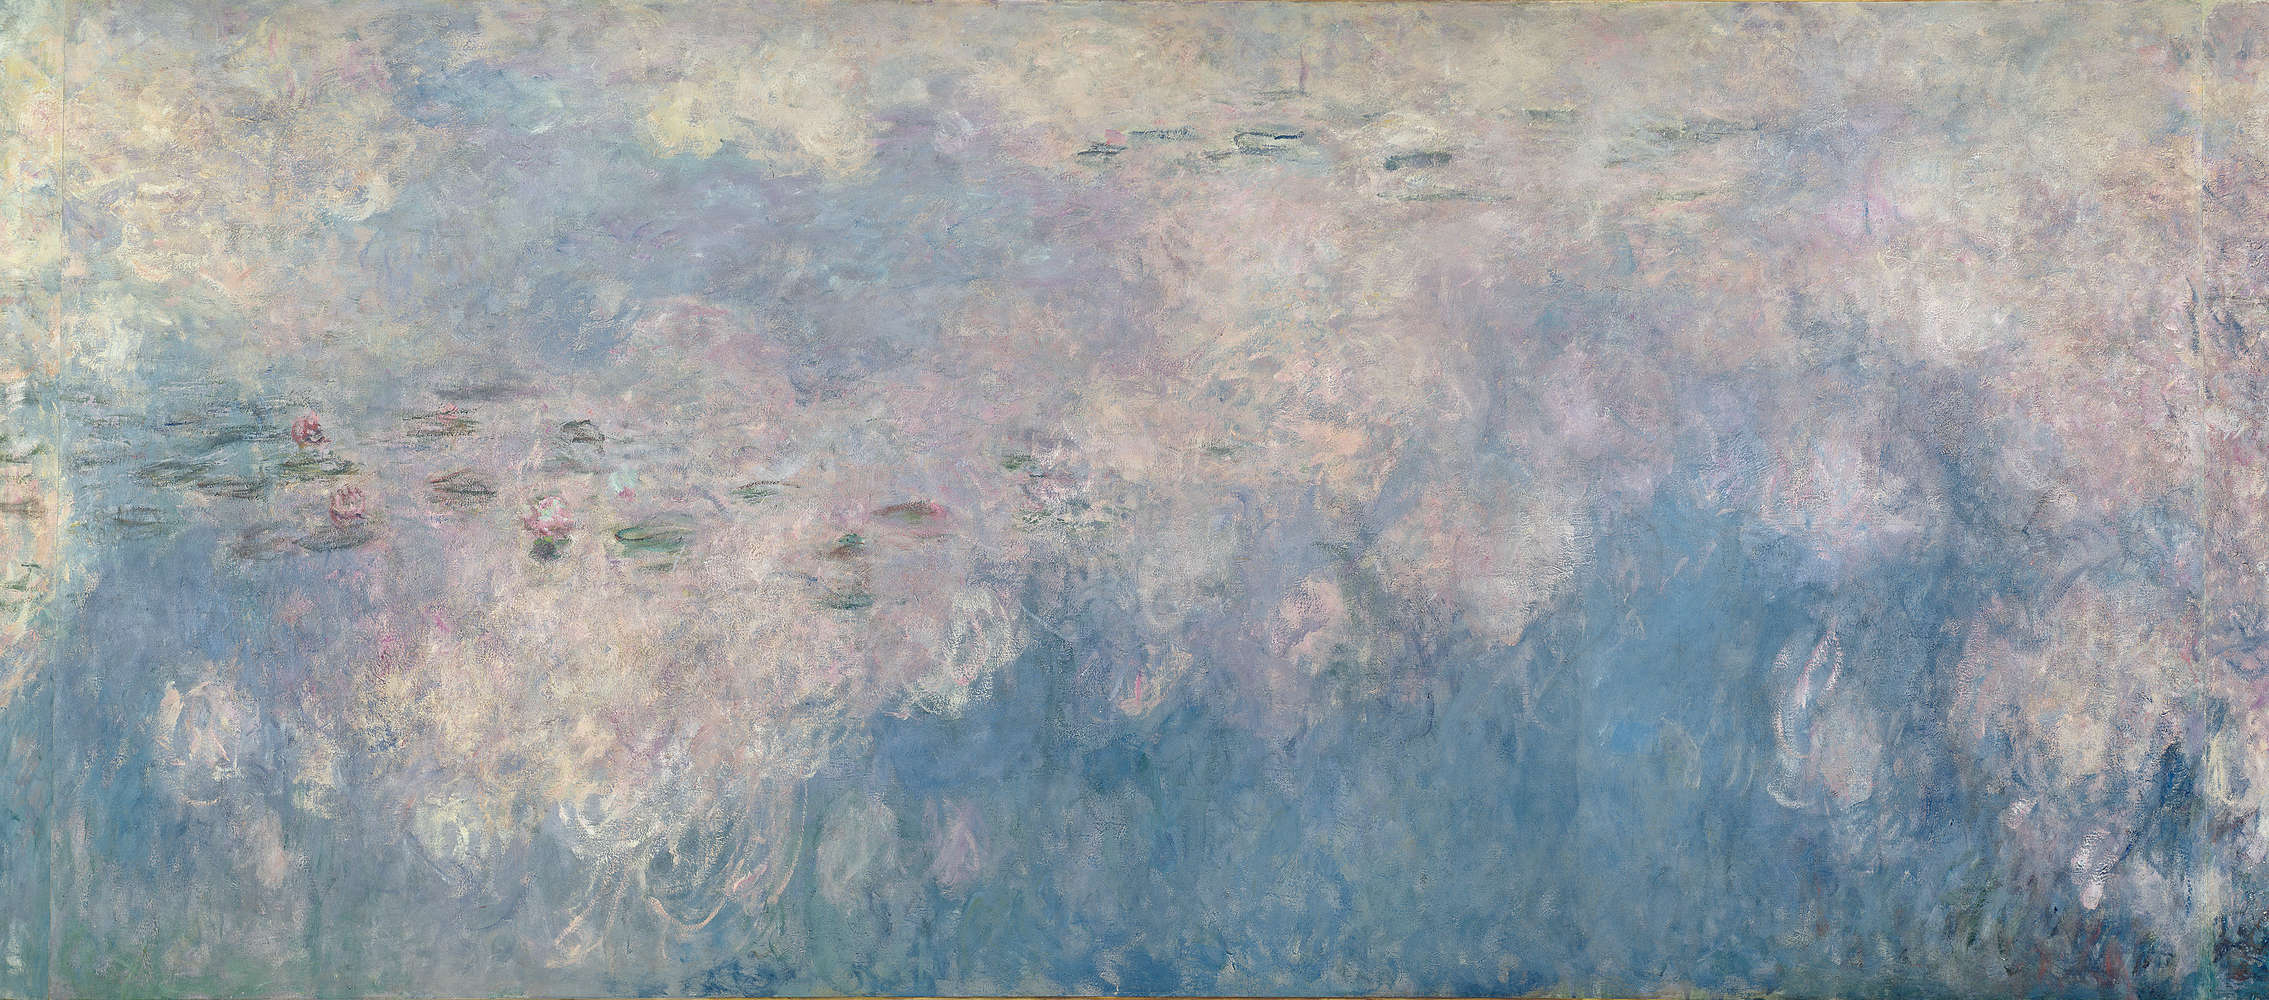             Waterlelies De Wolken" muurschildering van Claude Monet
        